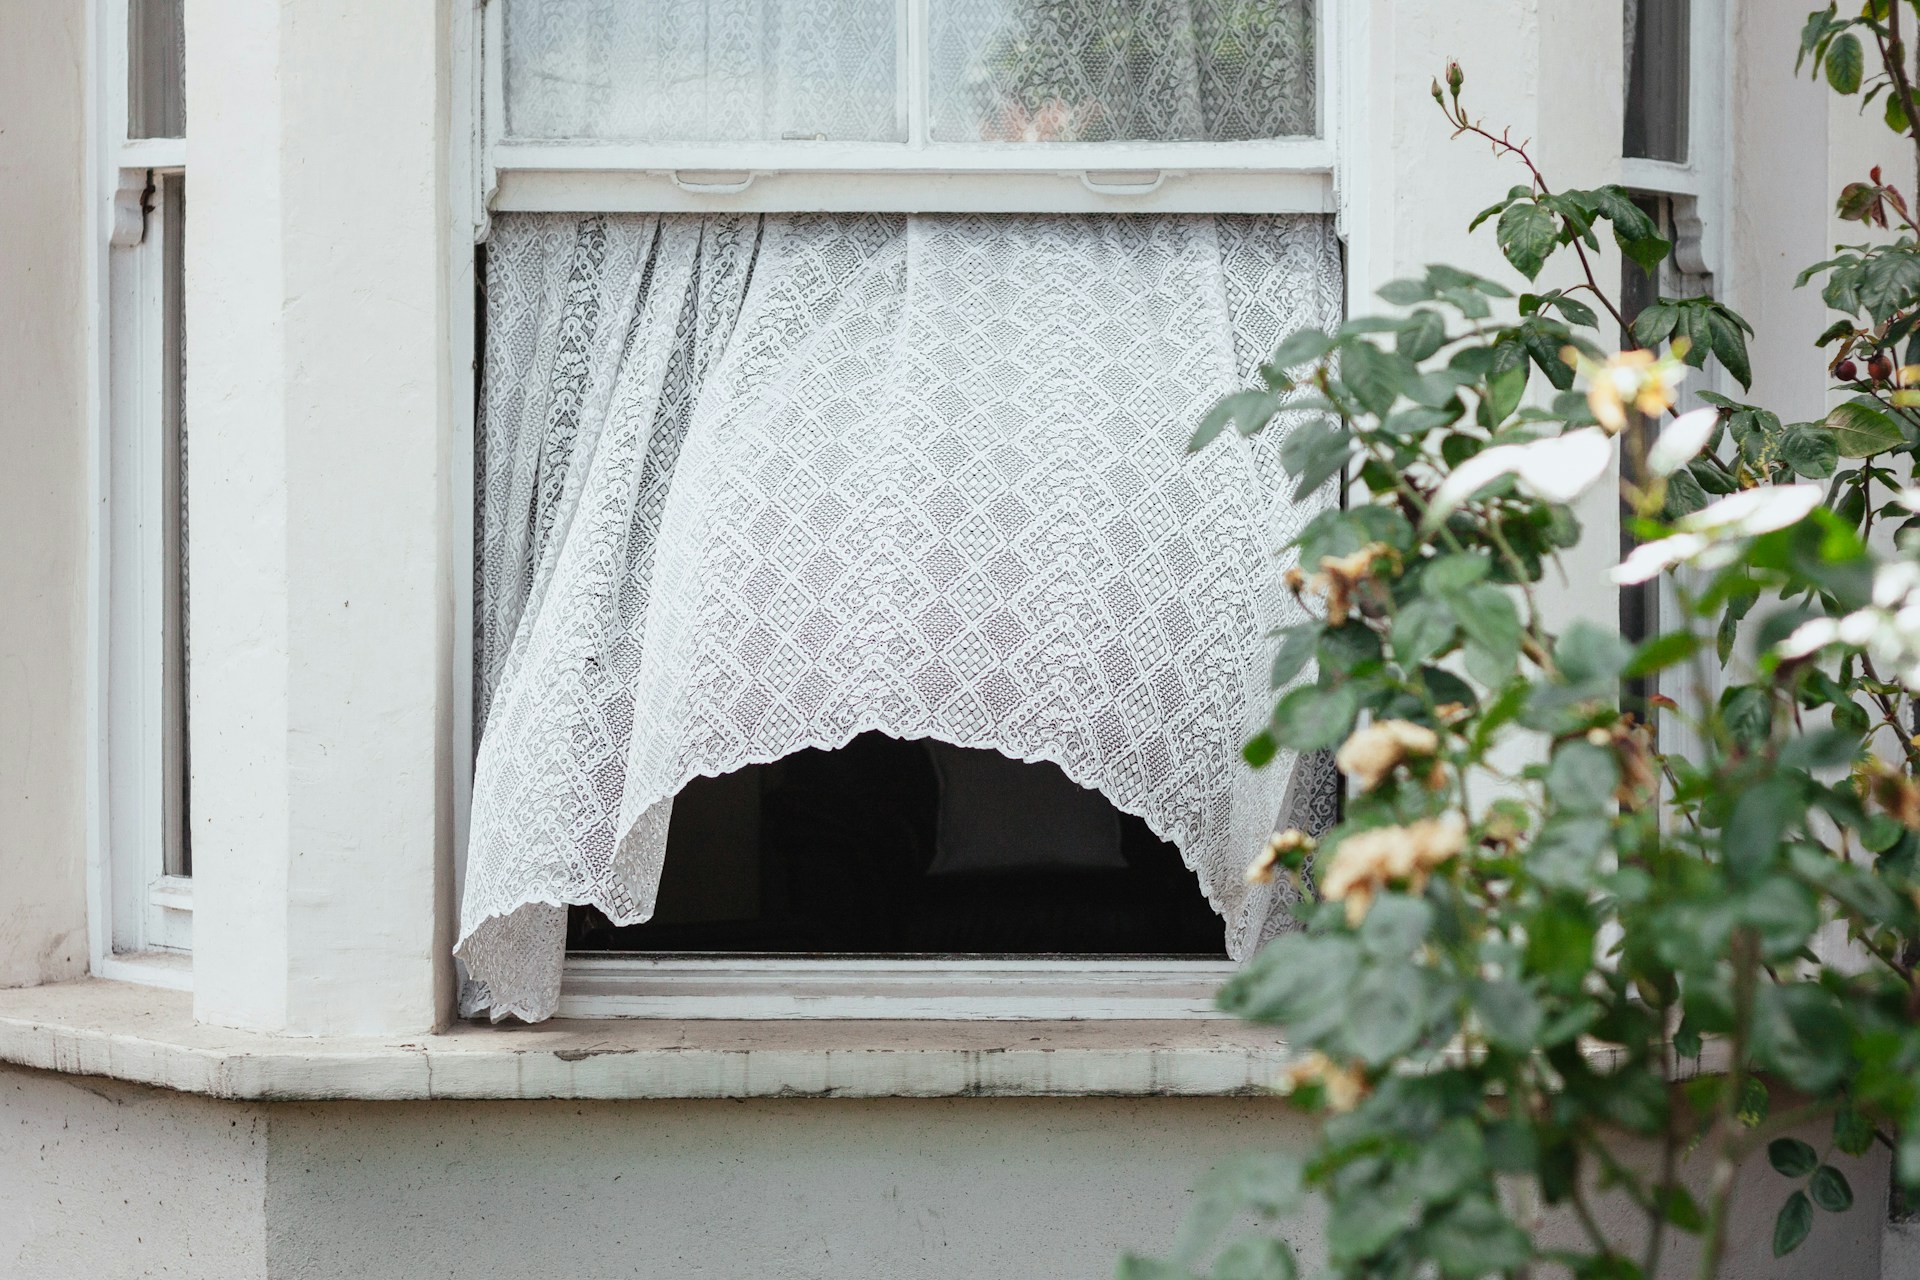  Τα οφέλη από το να αφήνεις ένα παράθυρο ανοιχτό ακόμη και τον χειμώνα